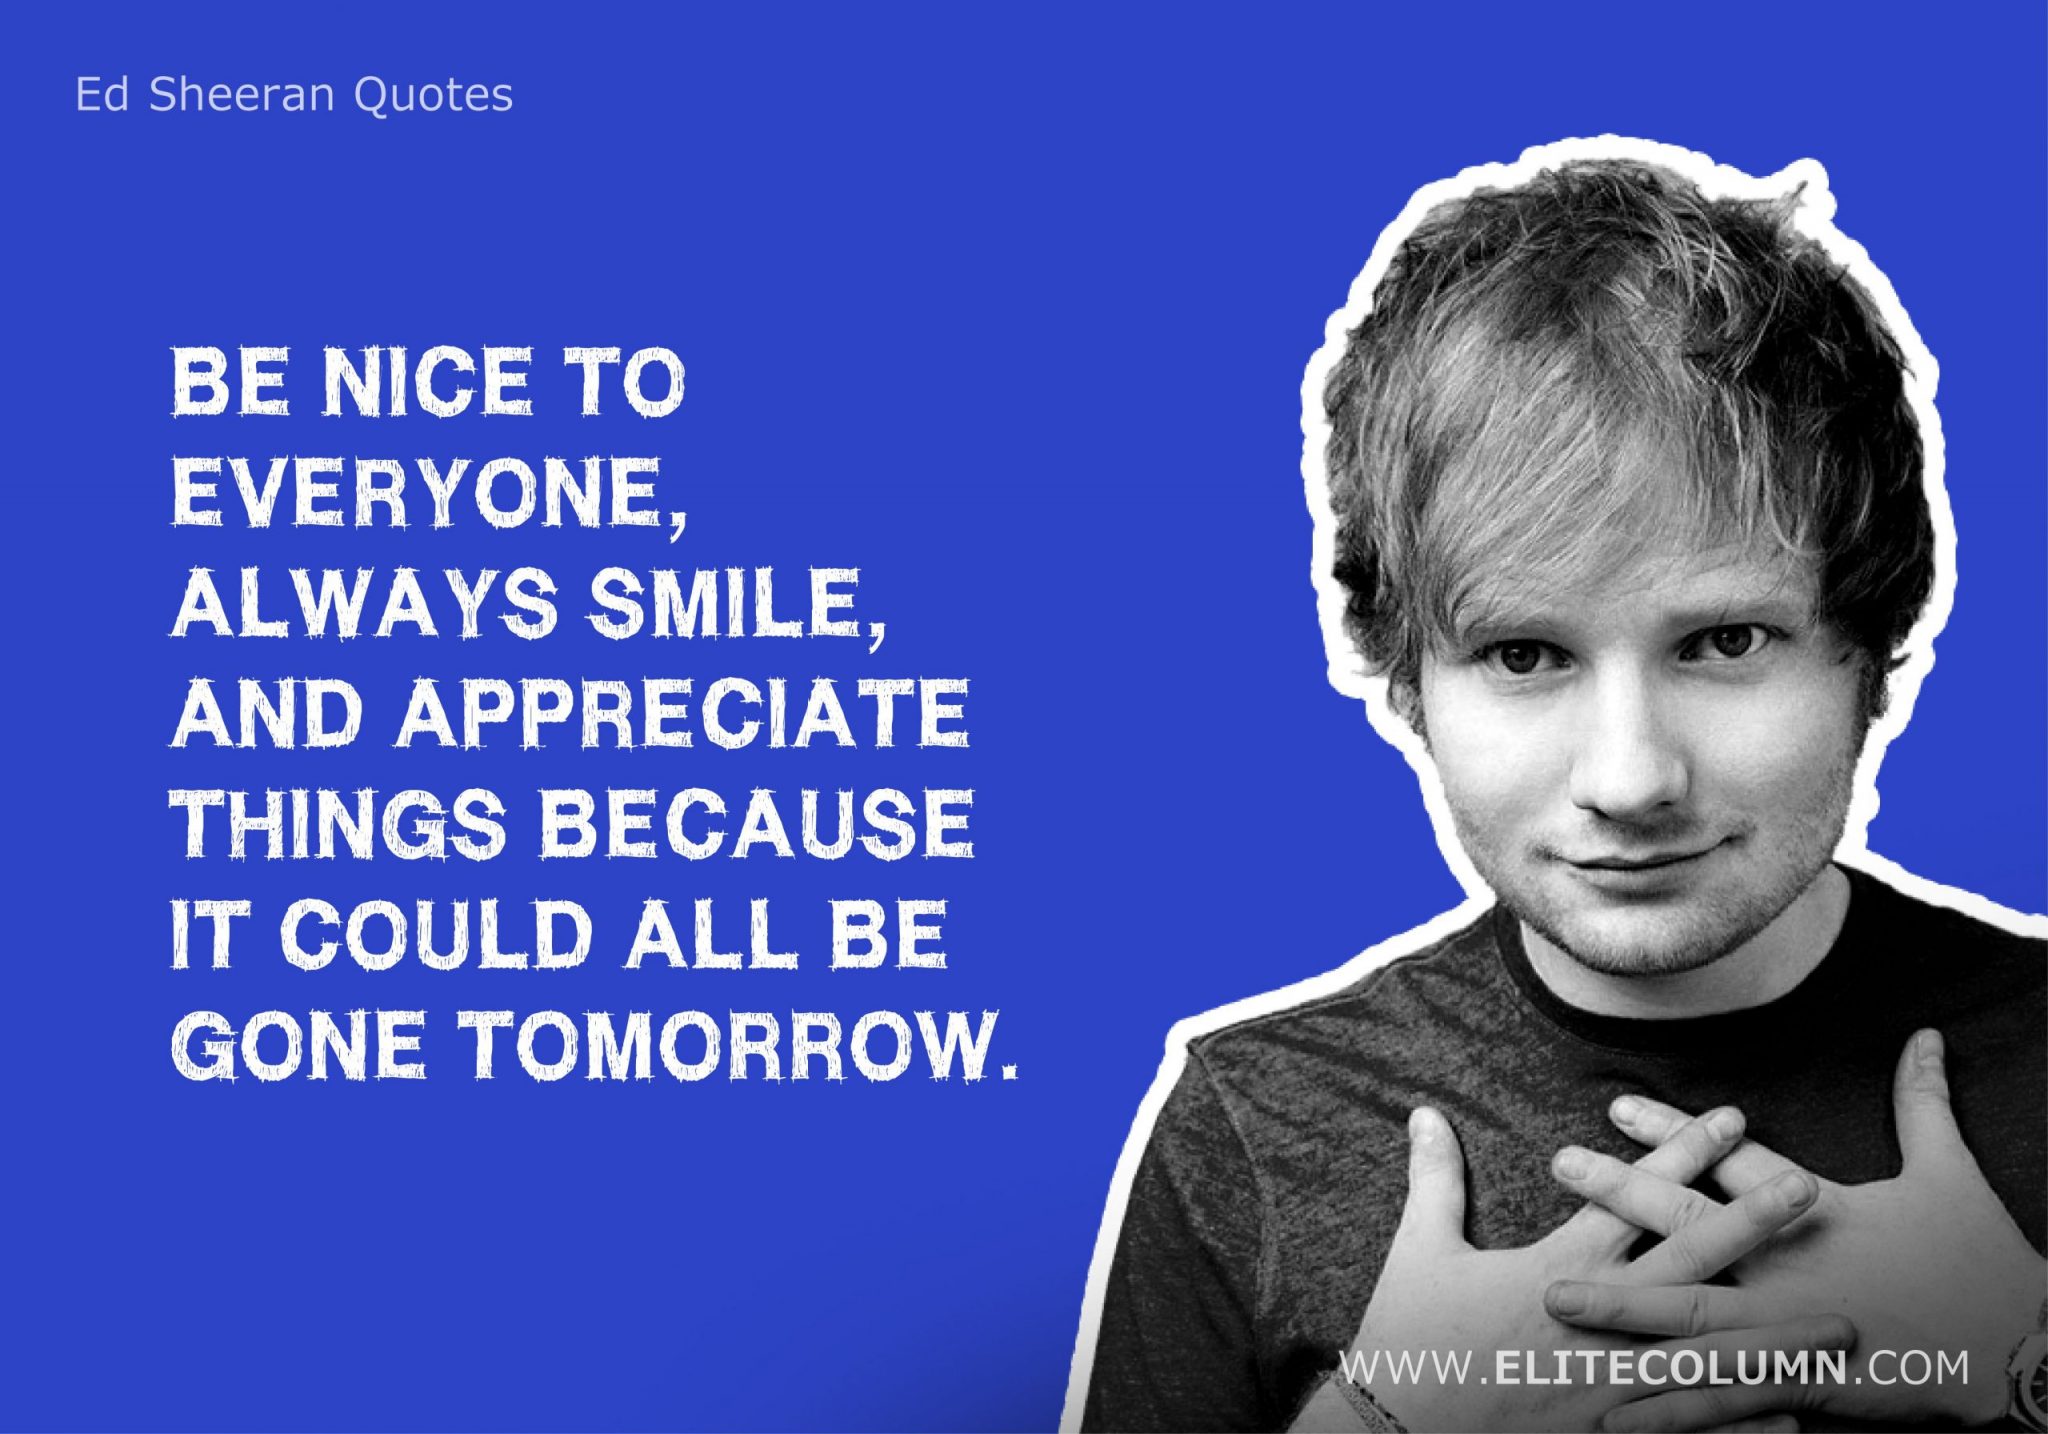 Ed Sheeran Quotes (13)